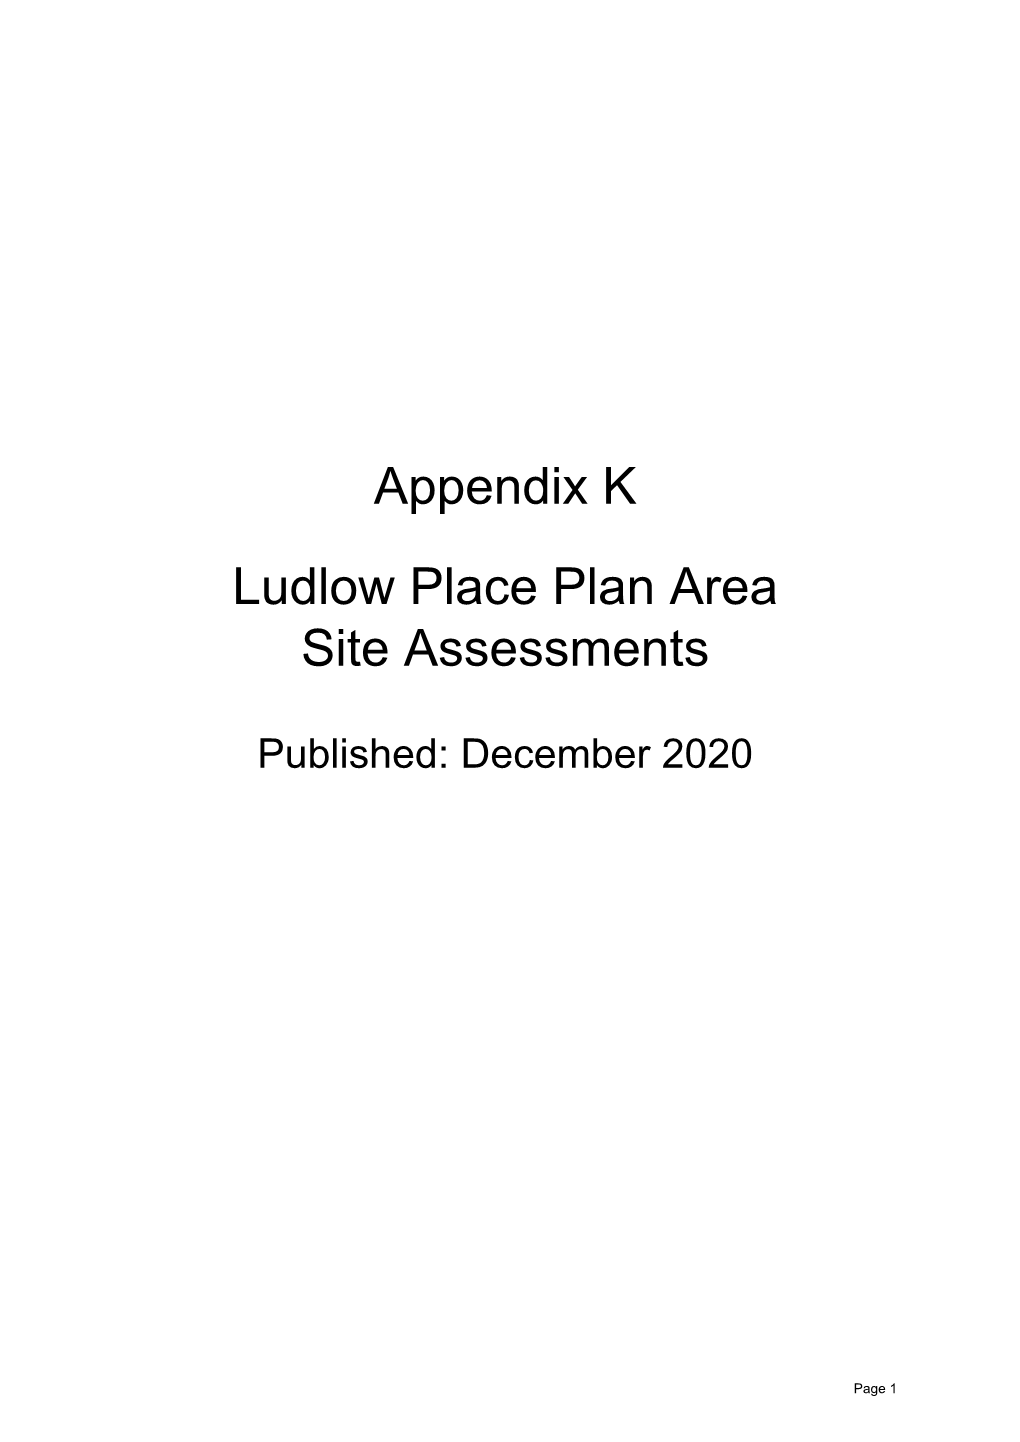 Appendix K Ludlow Place Plan Area Site Assessments